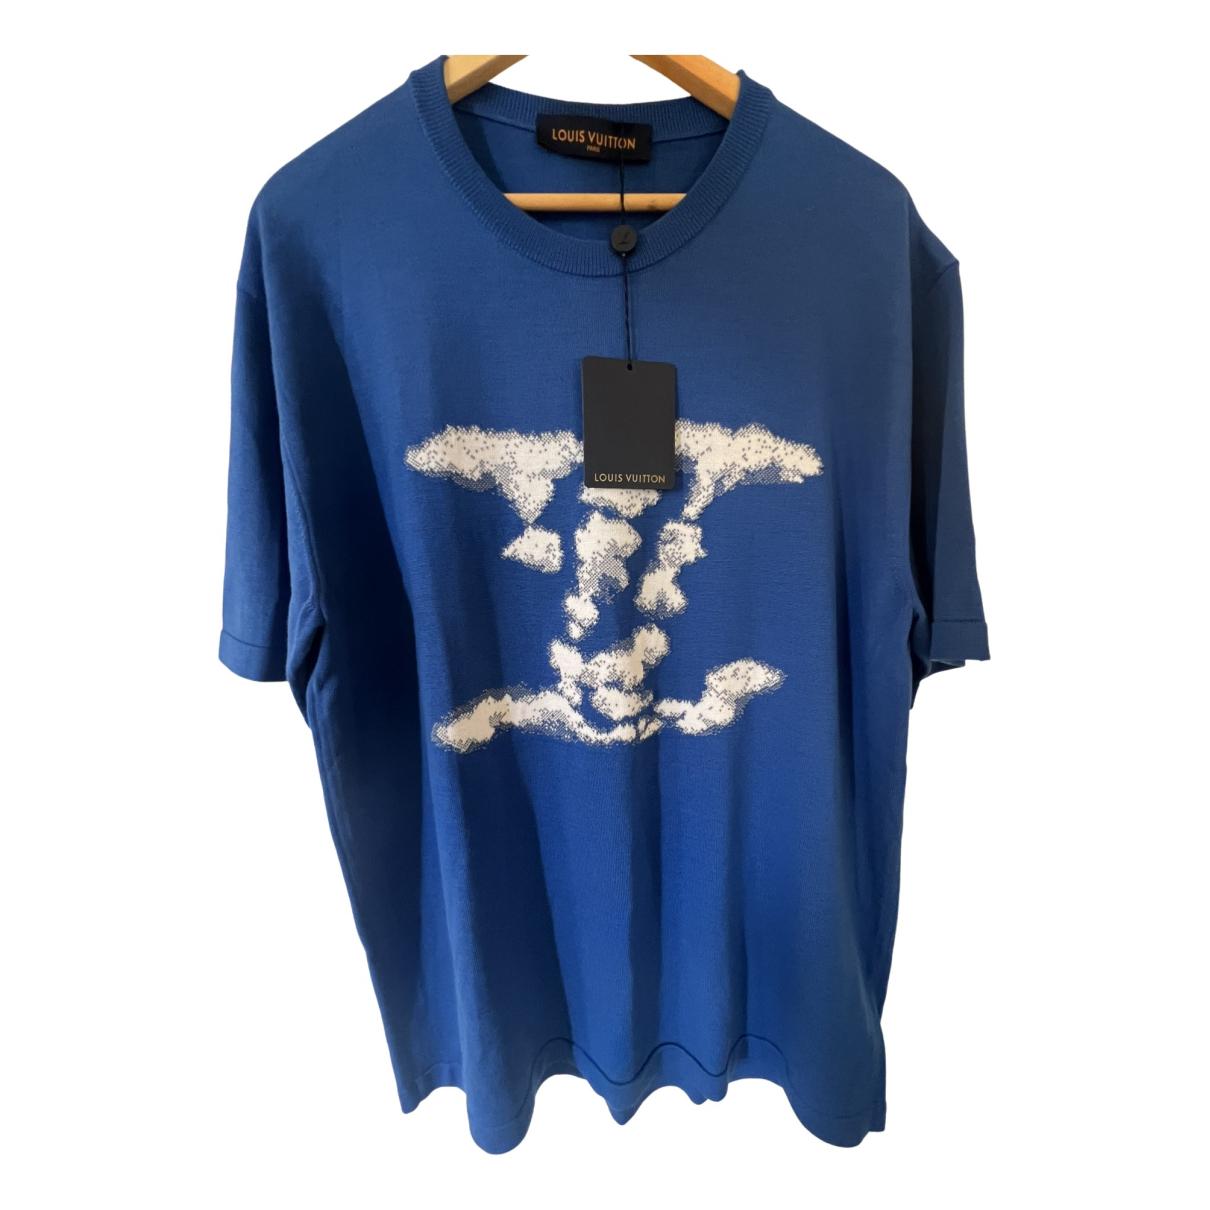 louis vuitton LV cloud jacquard blue t-shirt